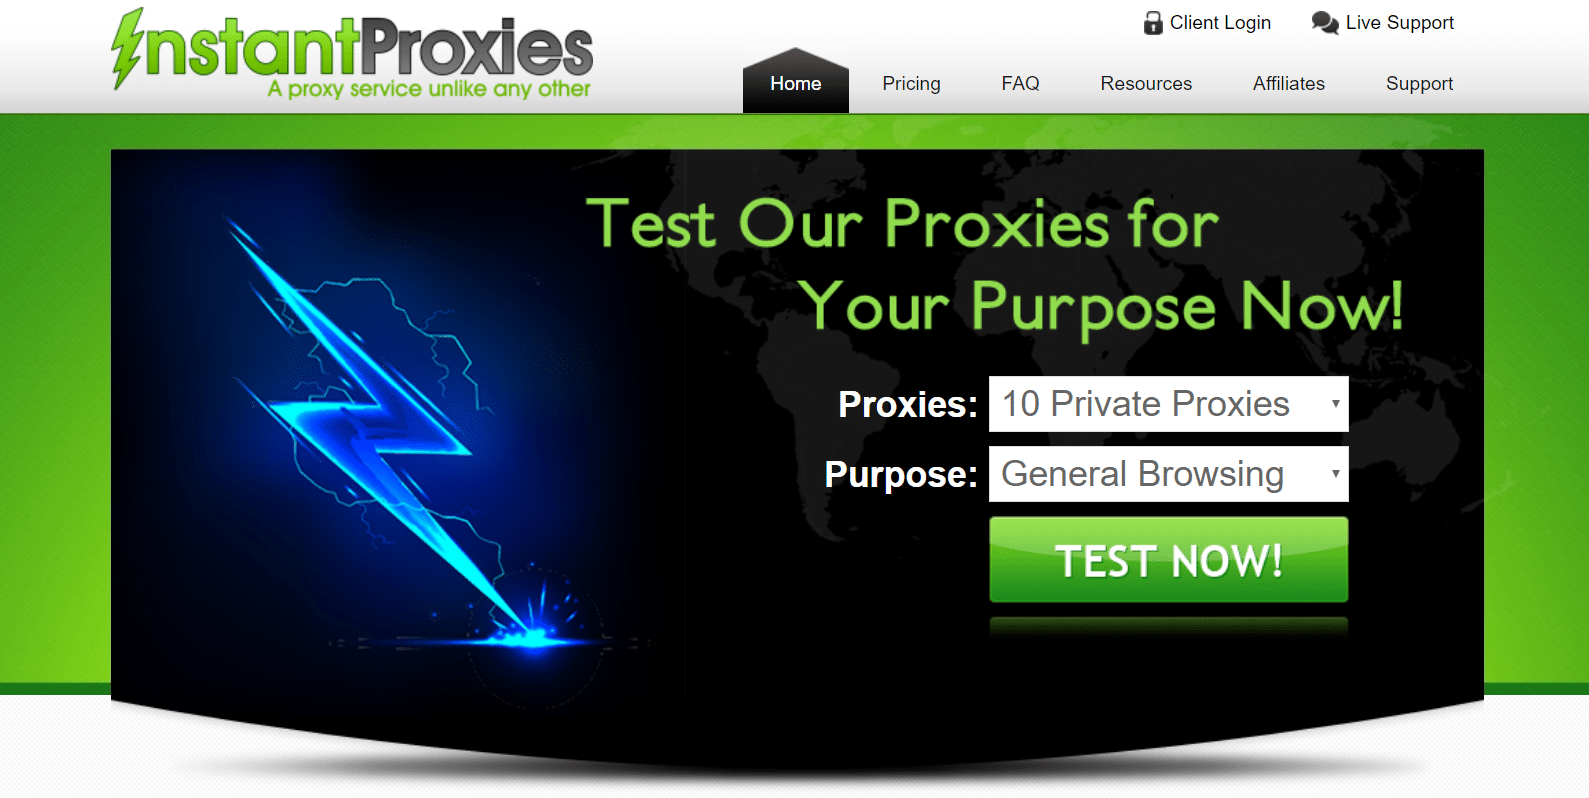 InstantProxies website homepage